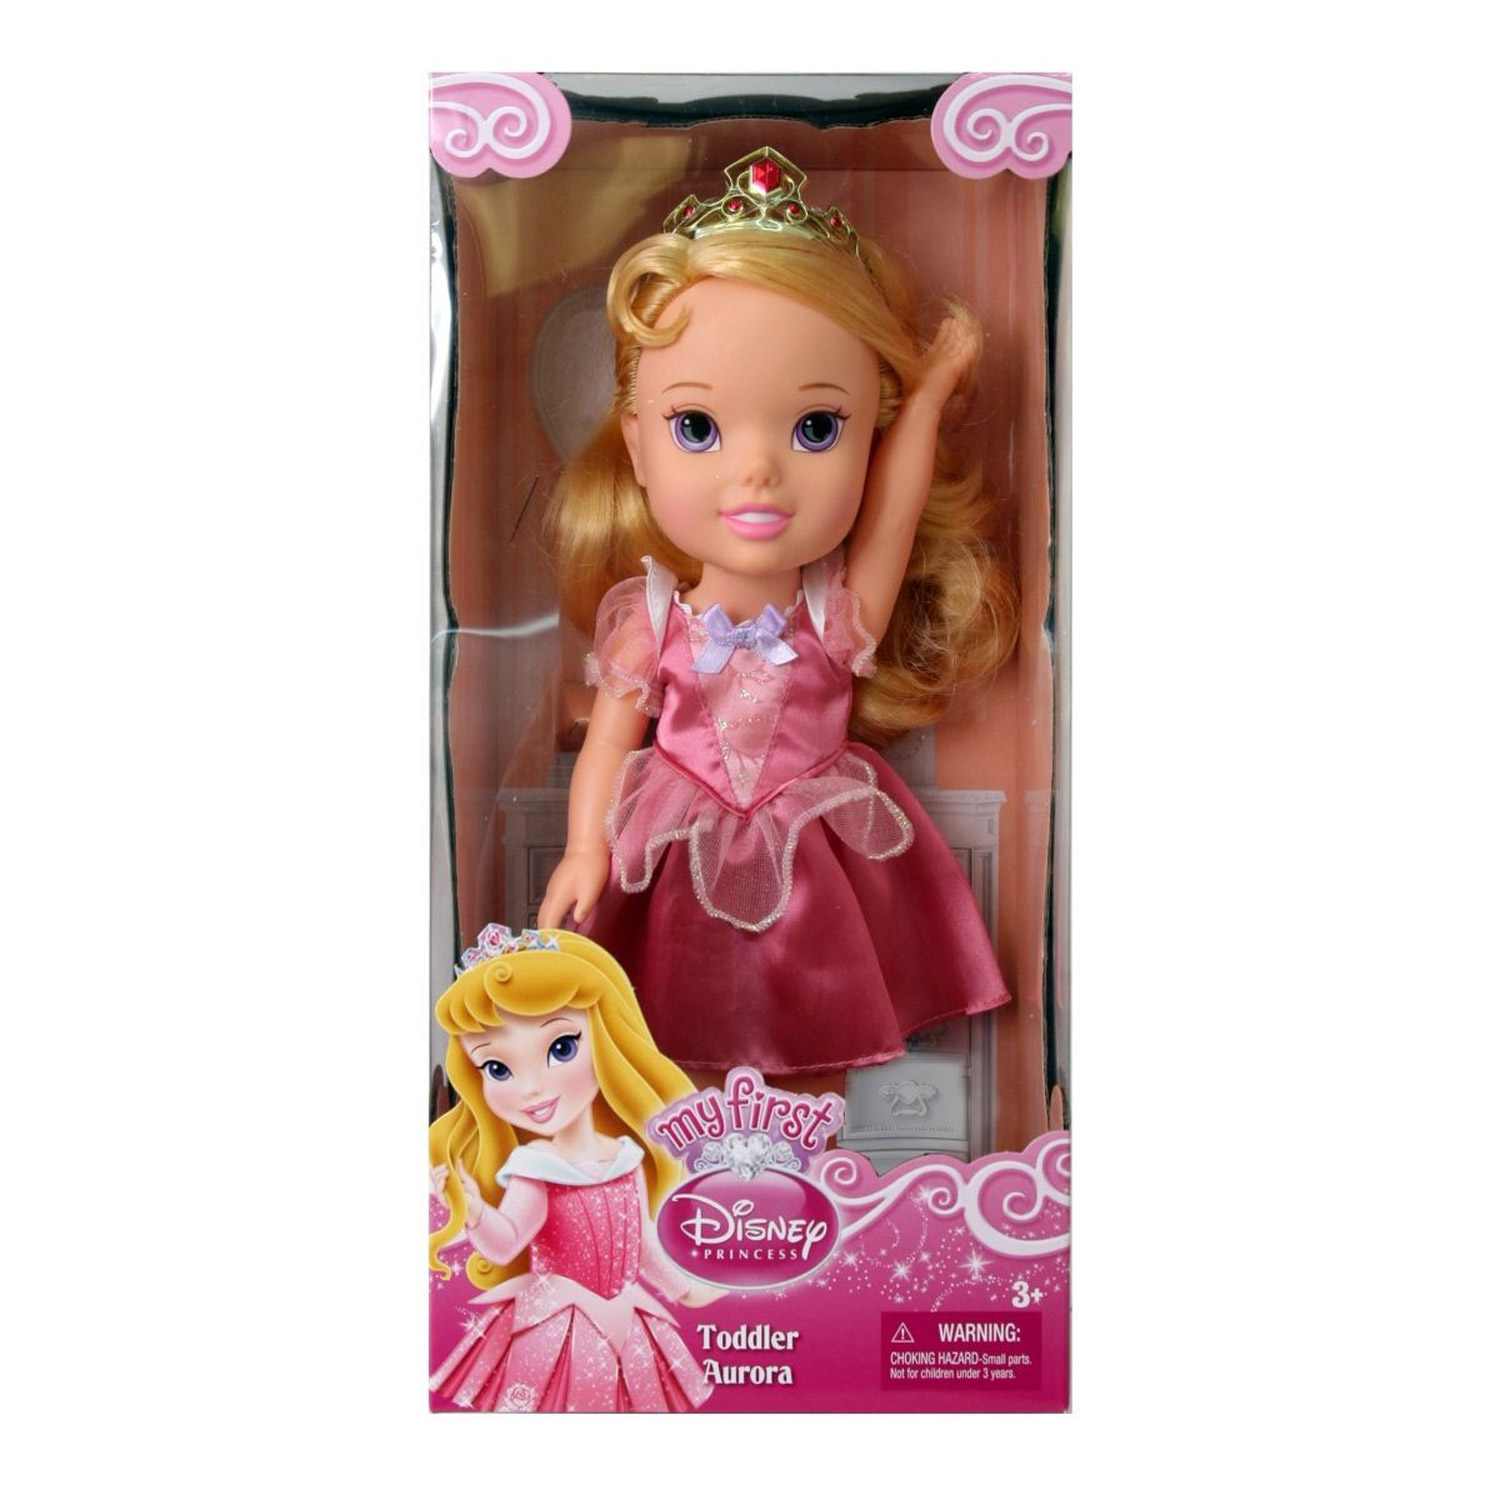 Принцесса малышка s класса слишком. Кукла 31 см принцесса Дисней малышка, 751170. Кукла Disney принцесса малышка 31 см 75122 751170. Куклы Дисней малышки my first Ариа.